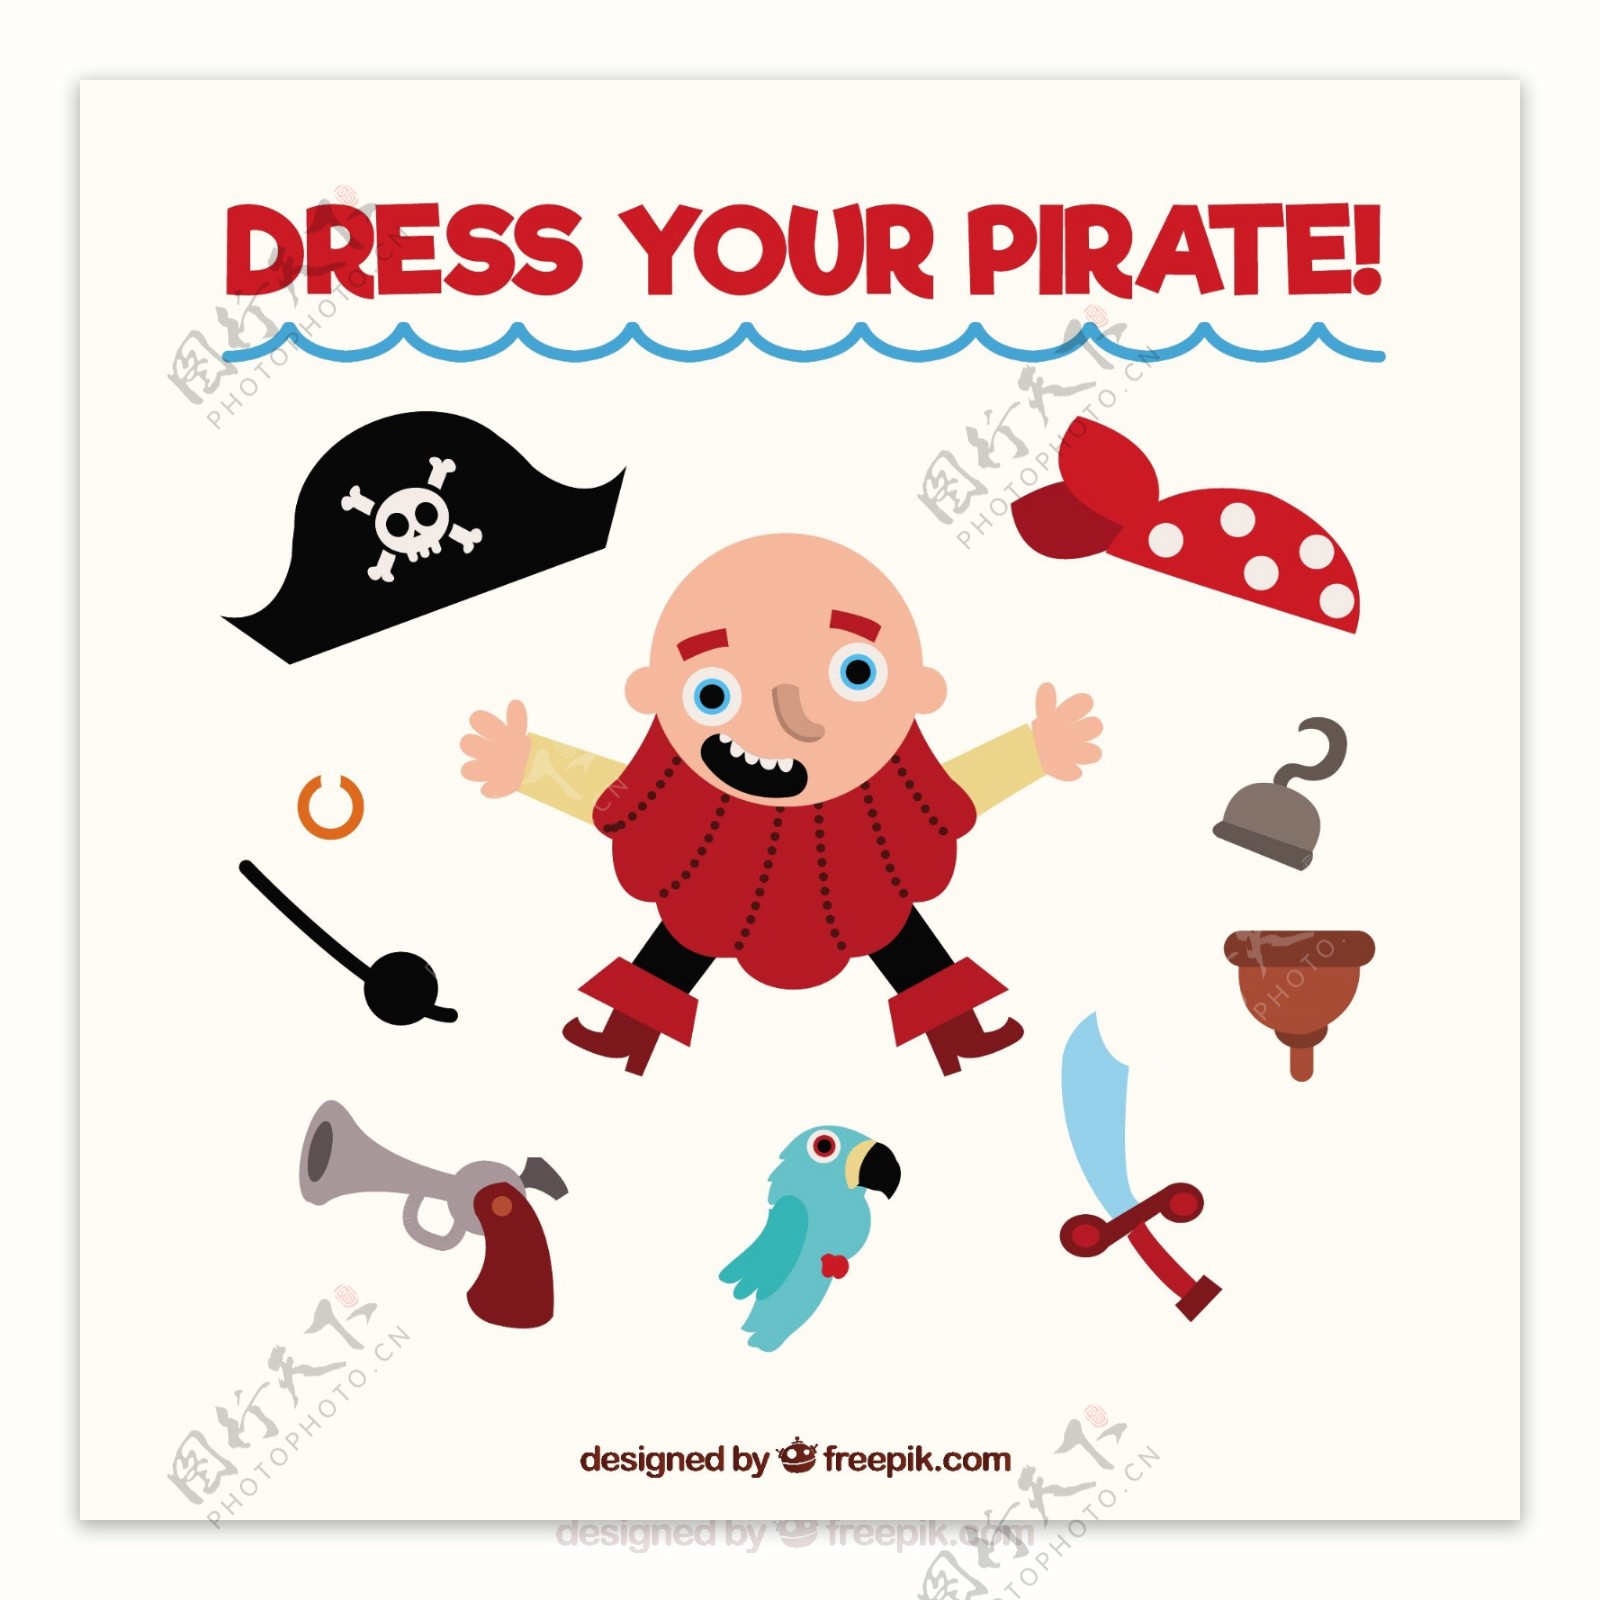 可爱卡通海盗物品元素图标